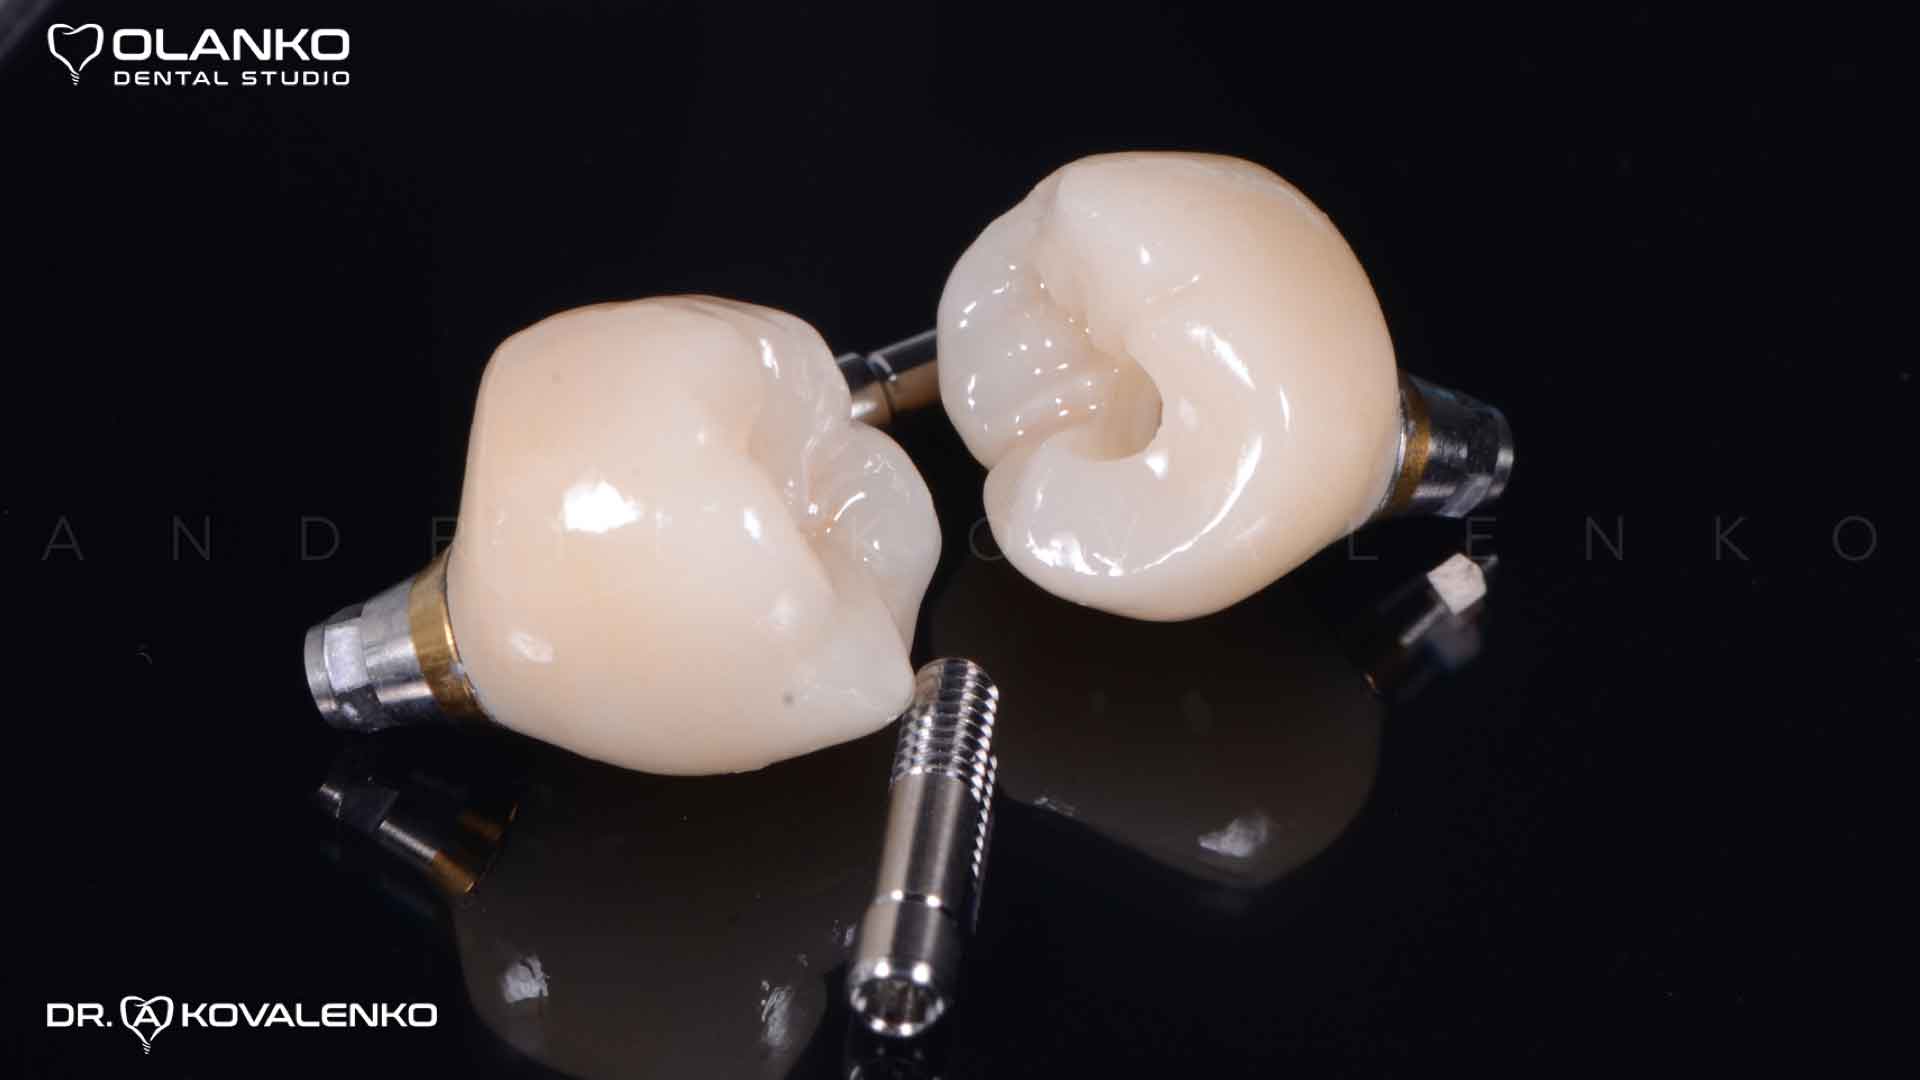 Клинический случай 6 имплантация зубов